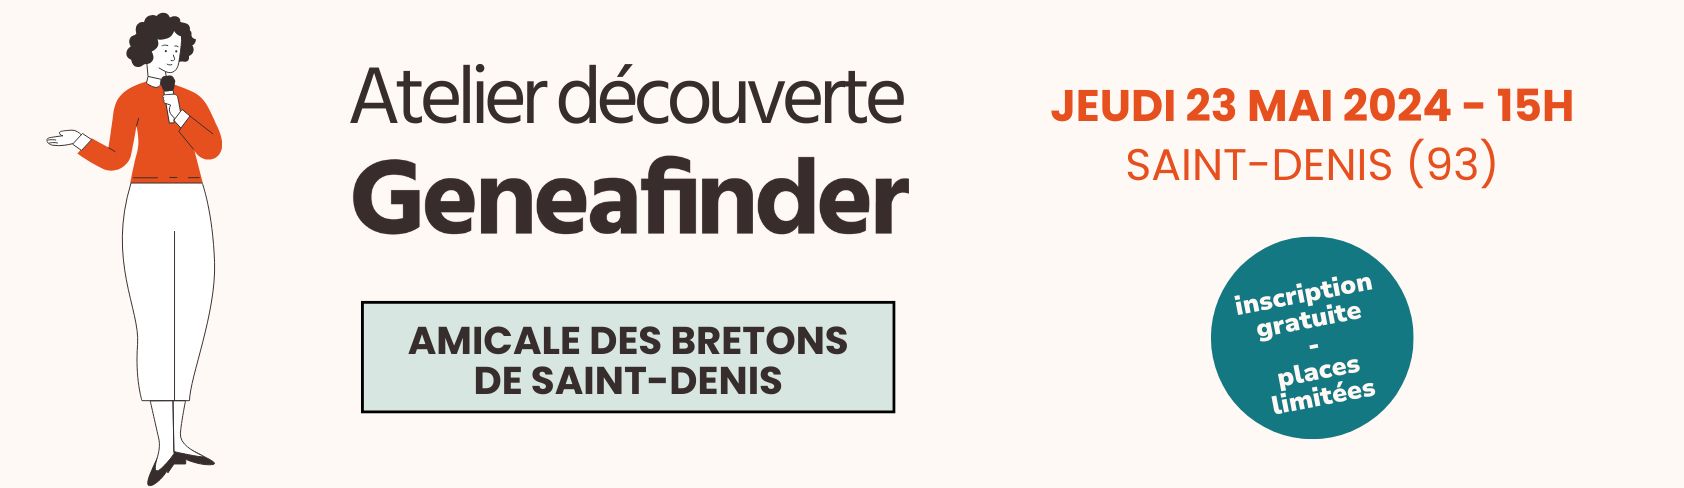 Atelier découverte Geneafinder, nous venons à votre rencontre à Saint-Denis !